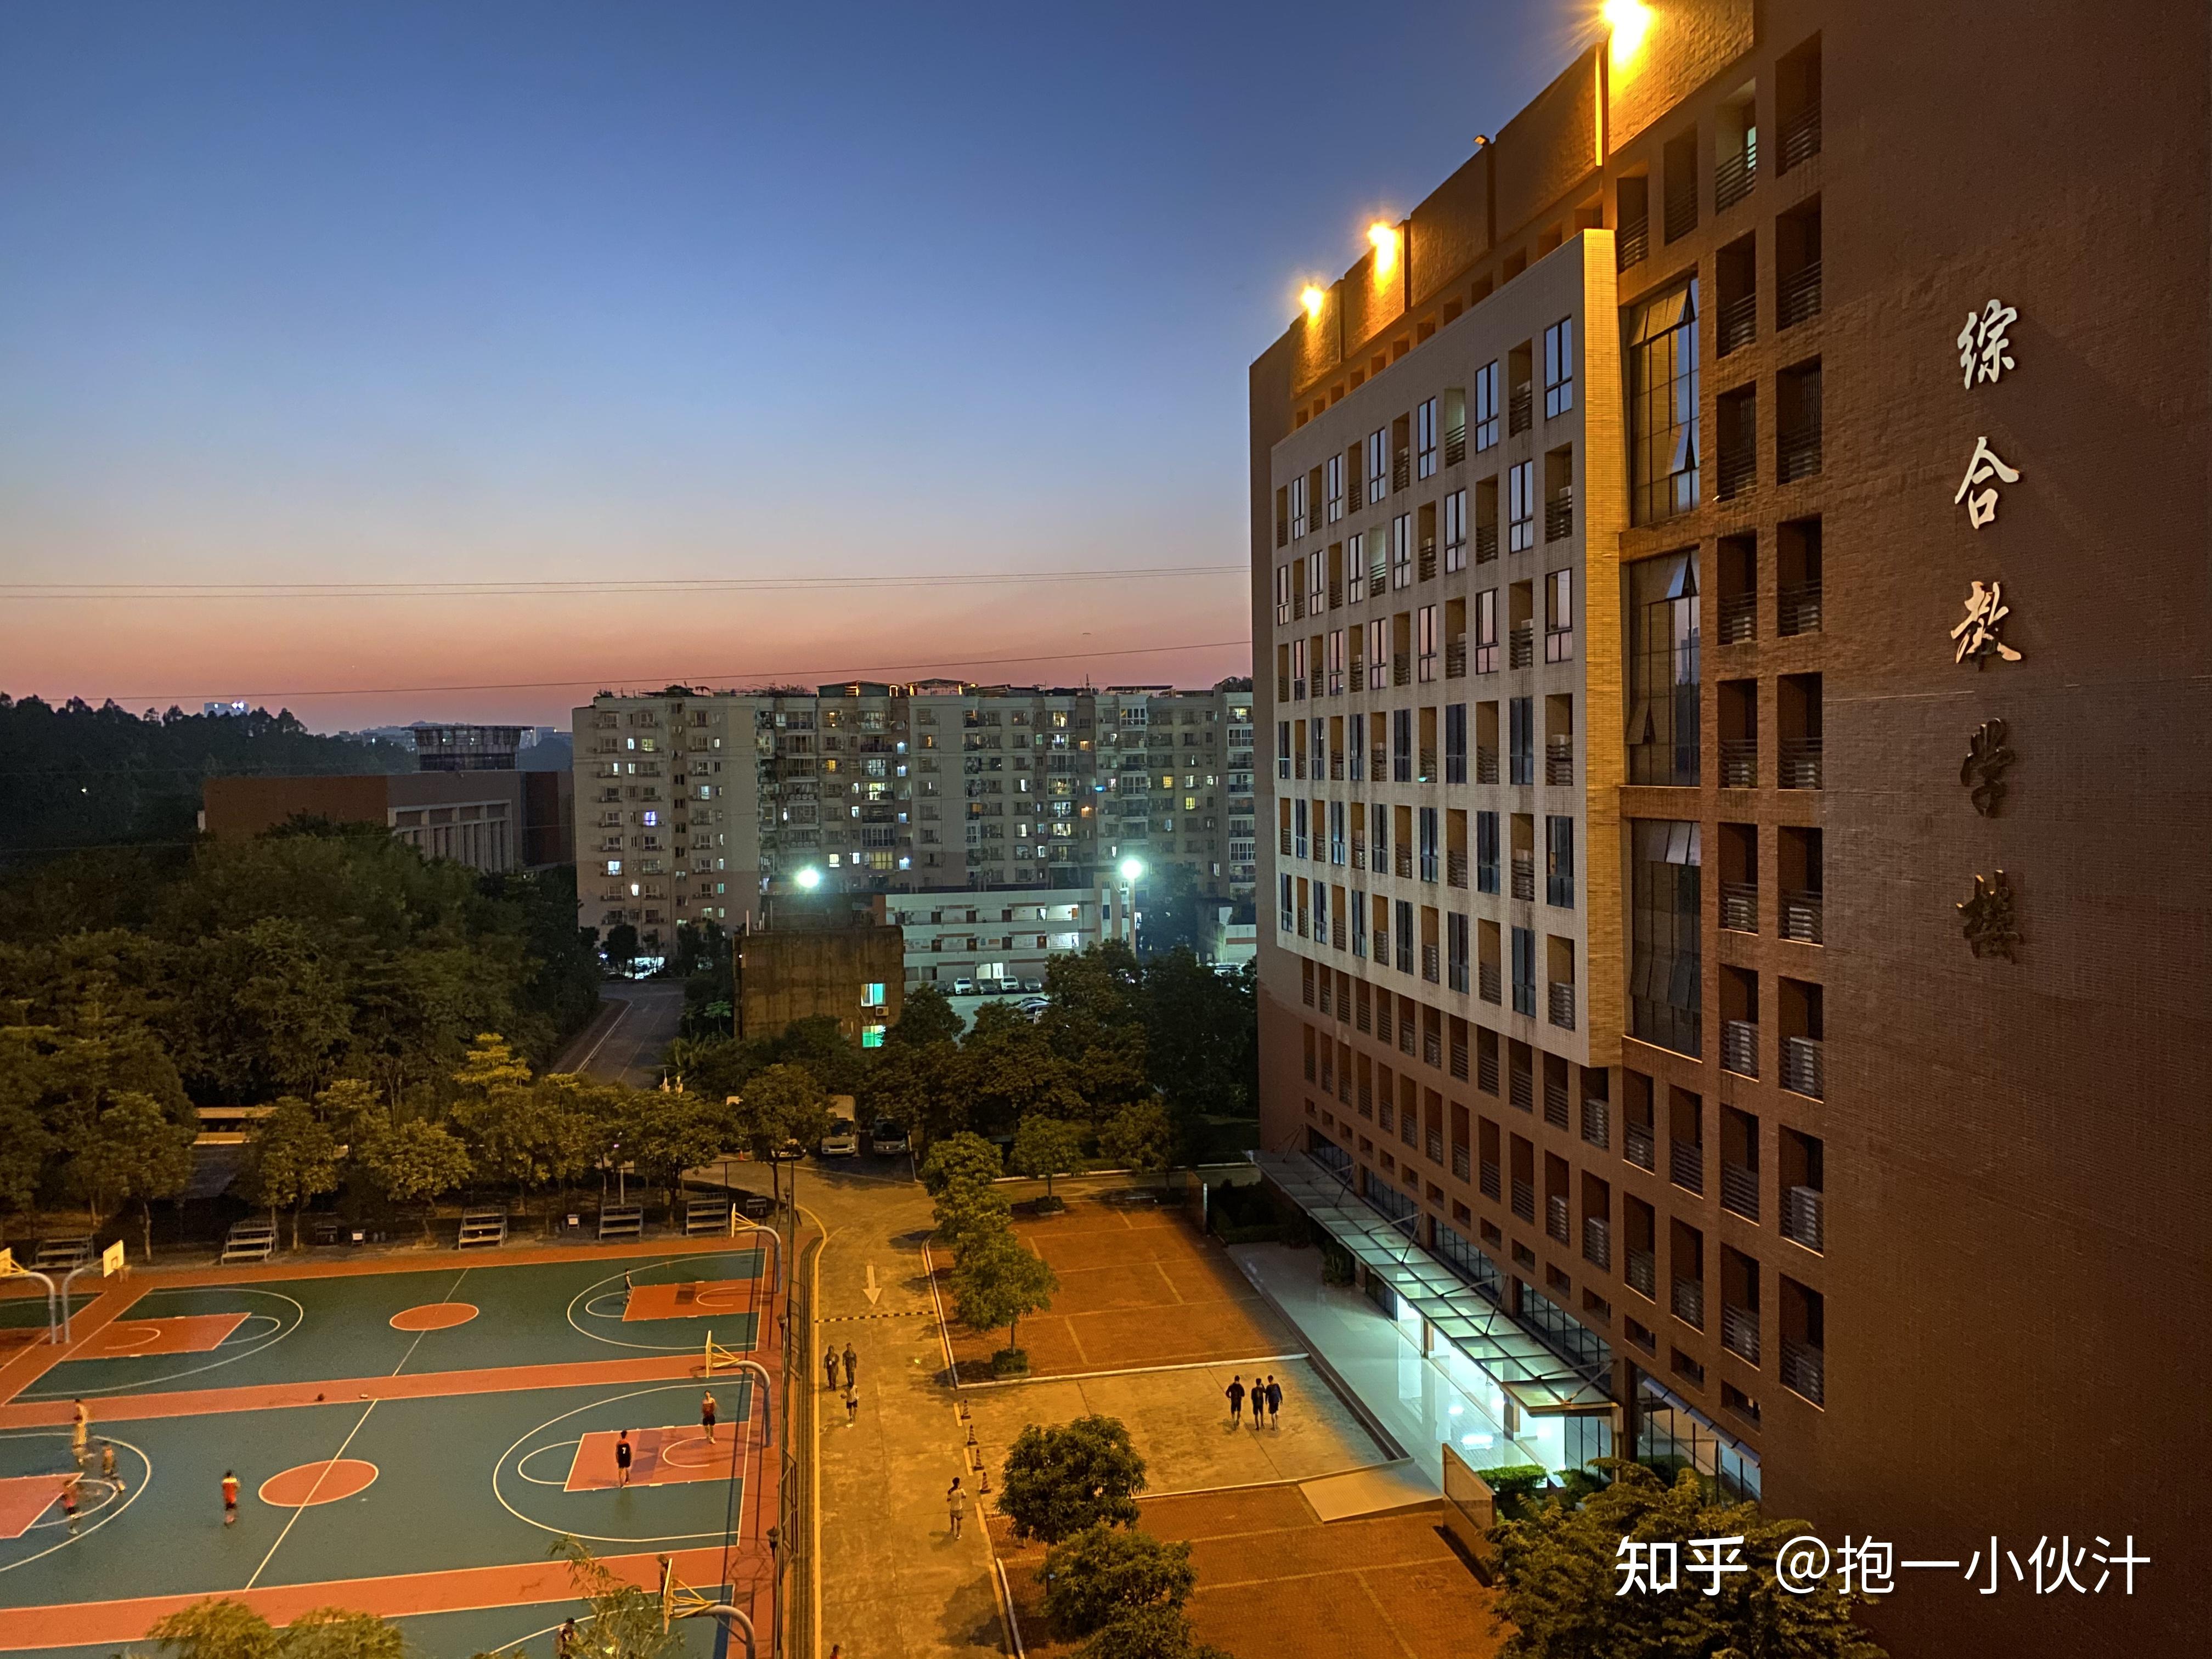 广州体育职业技术学院的宿舍条件如何?校区内有哪些生活设施? 